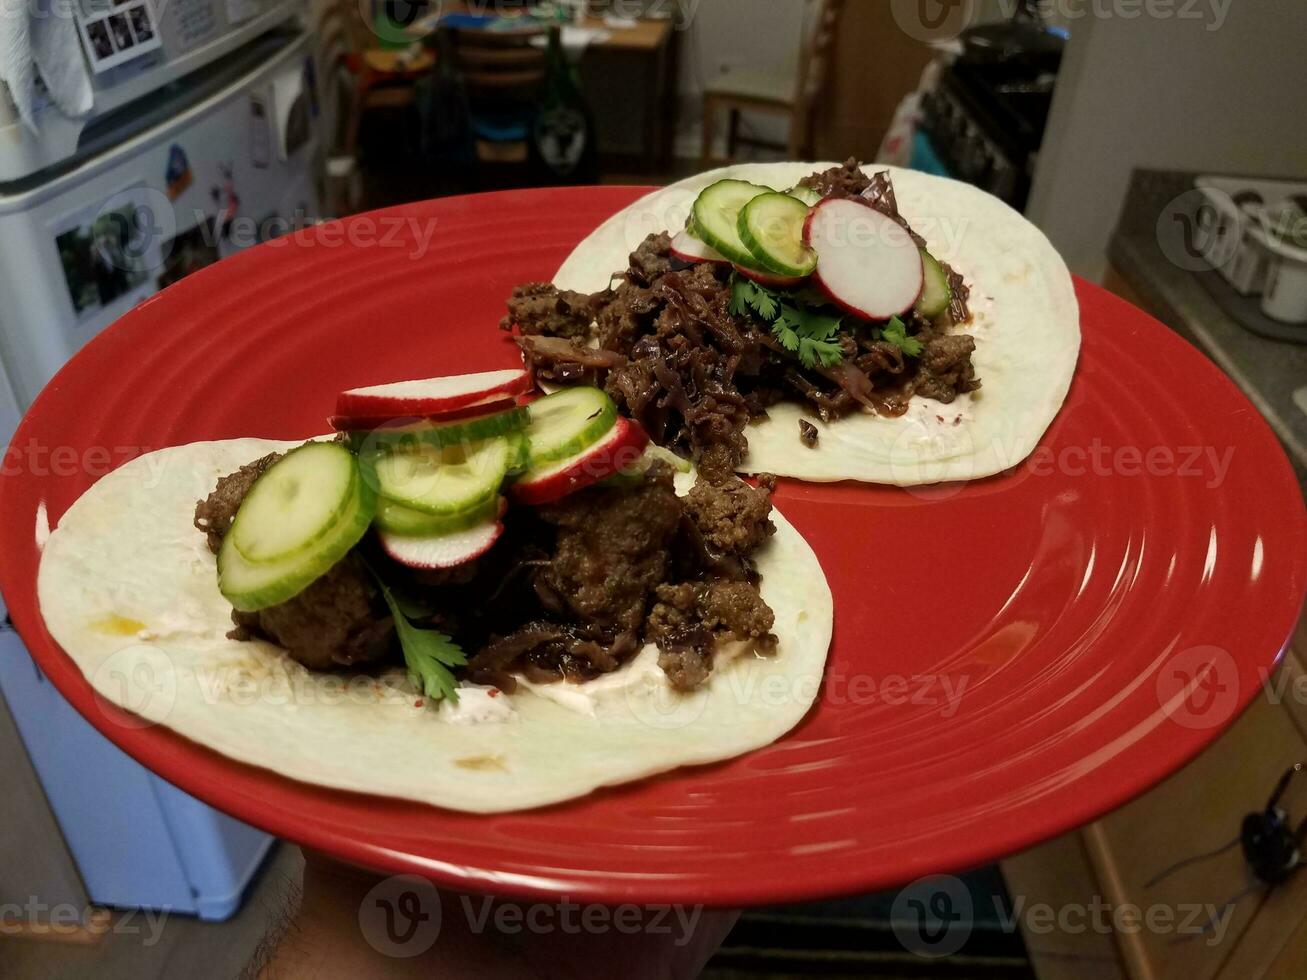 Rundvleestaco's en komkommer en radijs op rode plaat in keuken foto